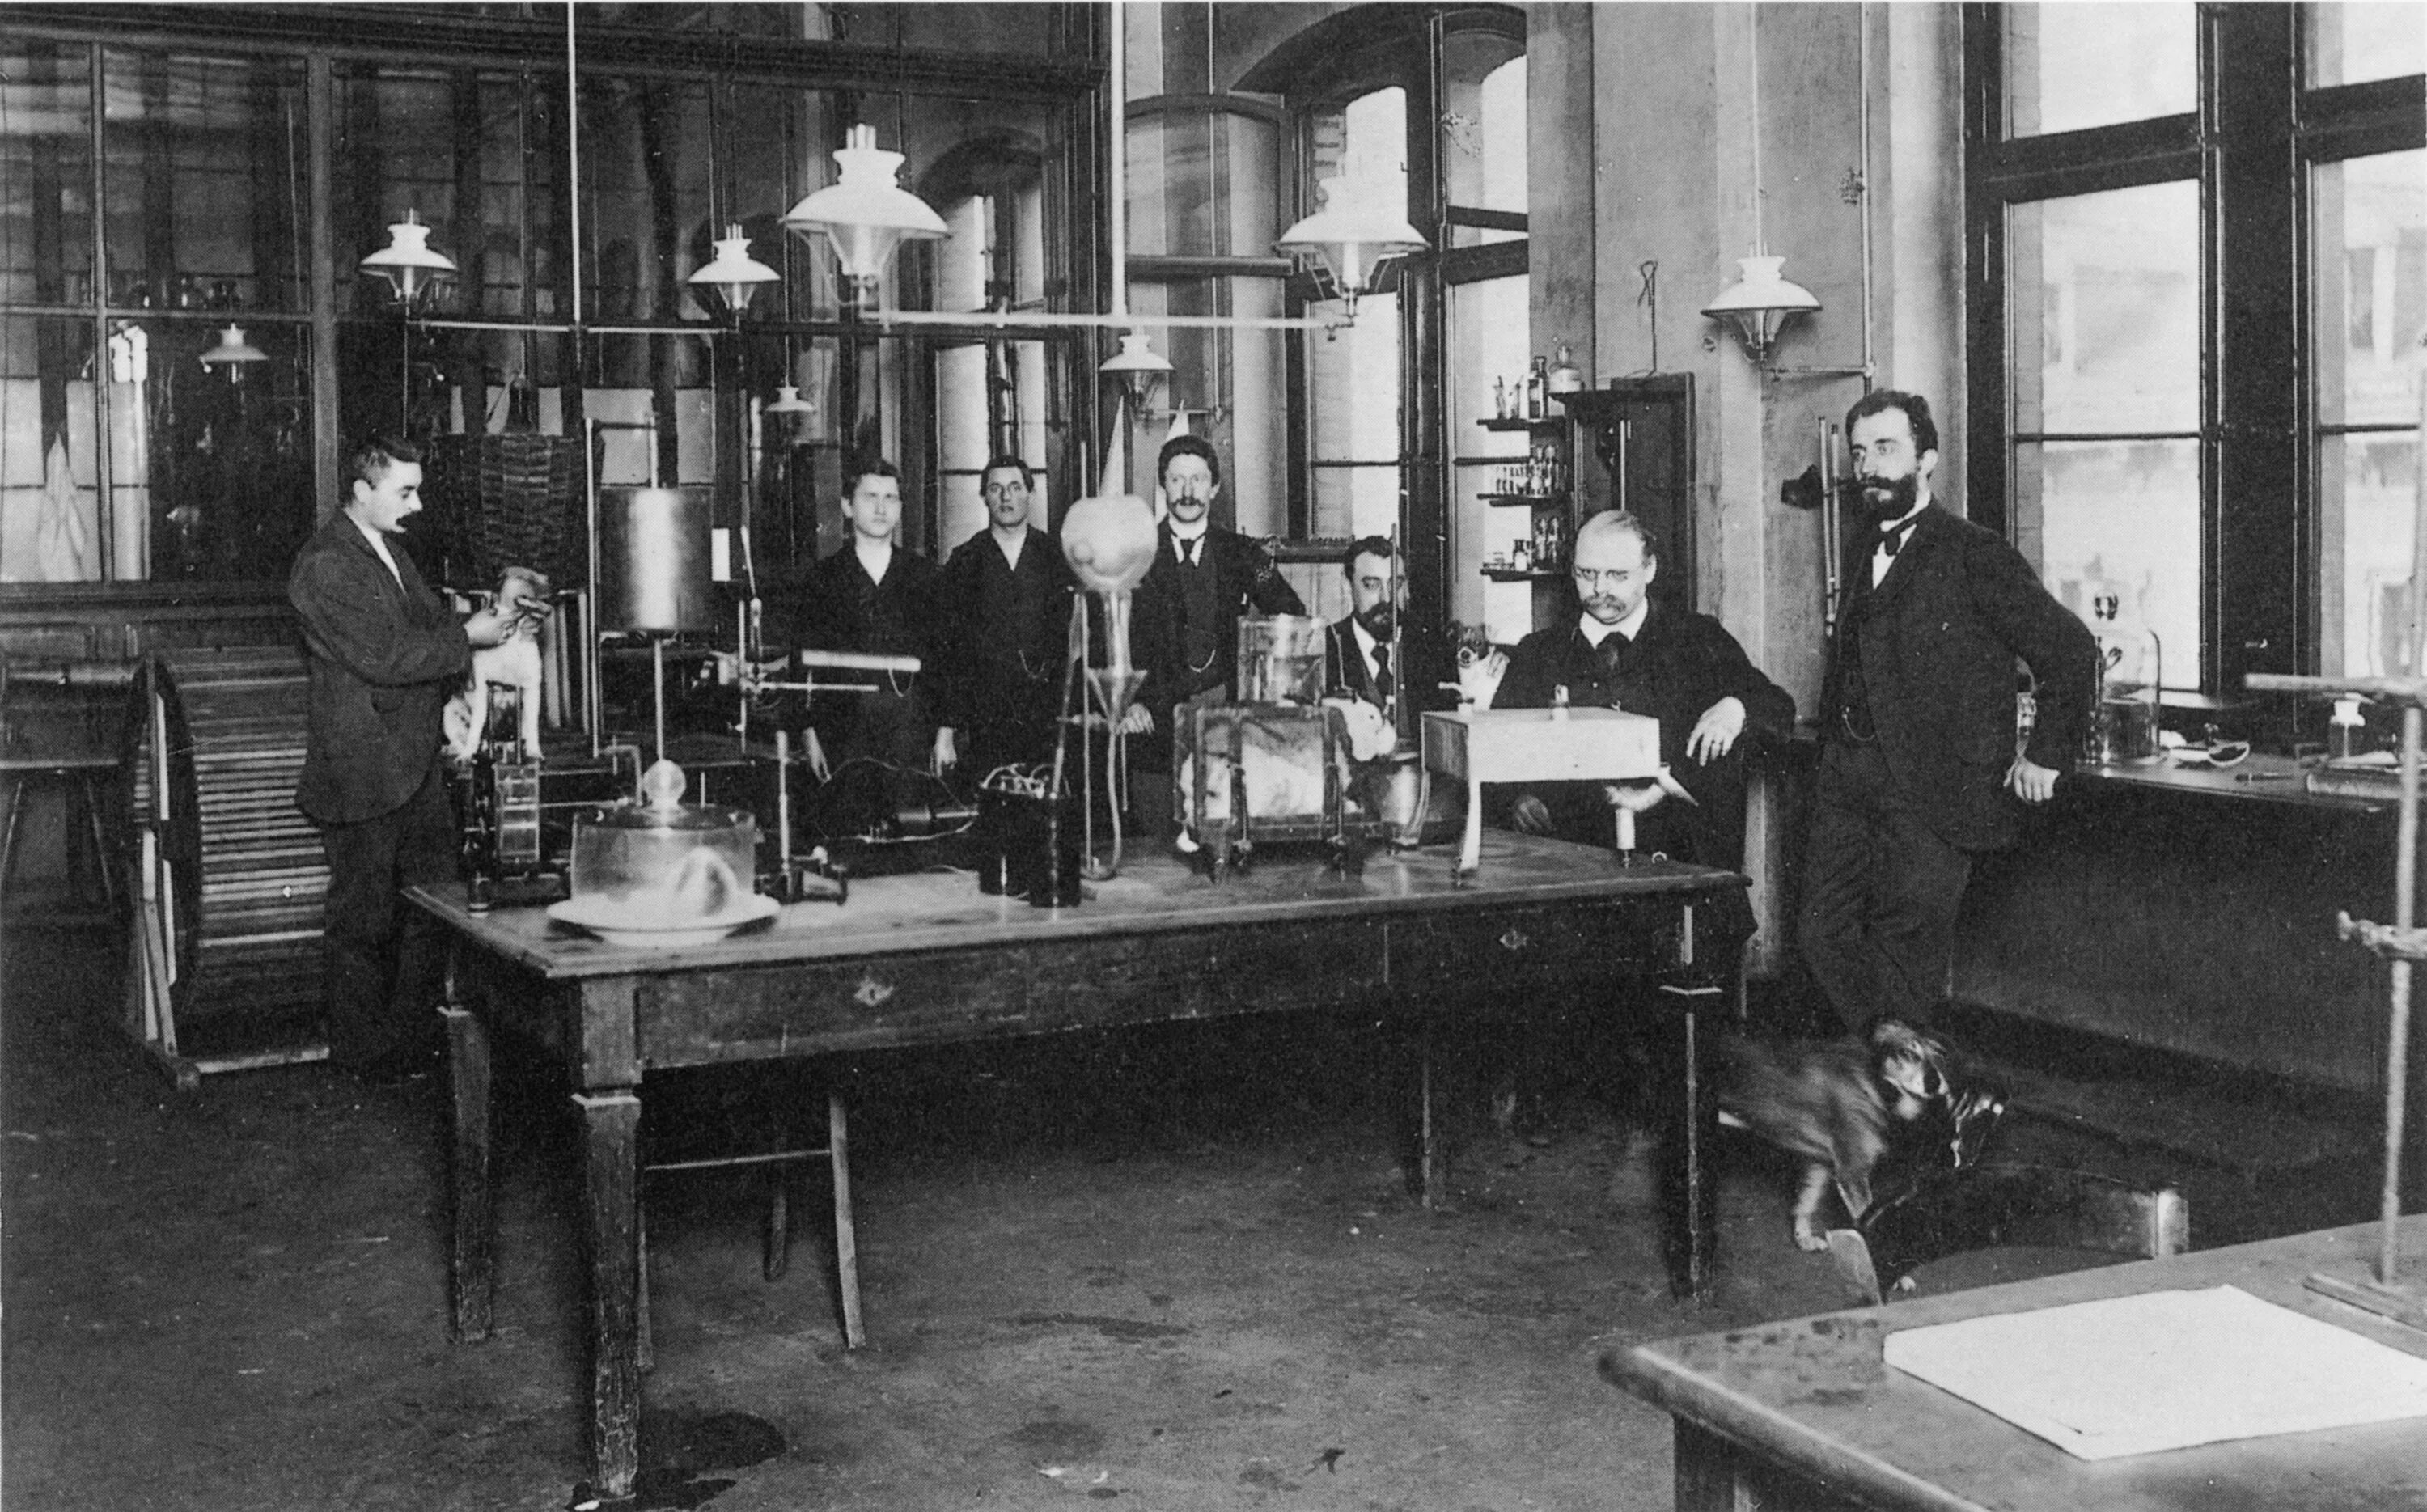 Химическая лаборатория 19 век Россия. Химики 19 века. Наука Германии 19 век. Ученый в лаборатории 19 век.